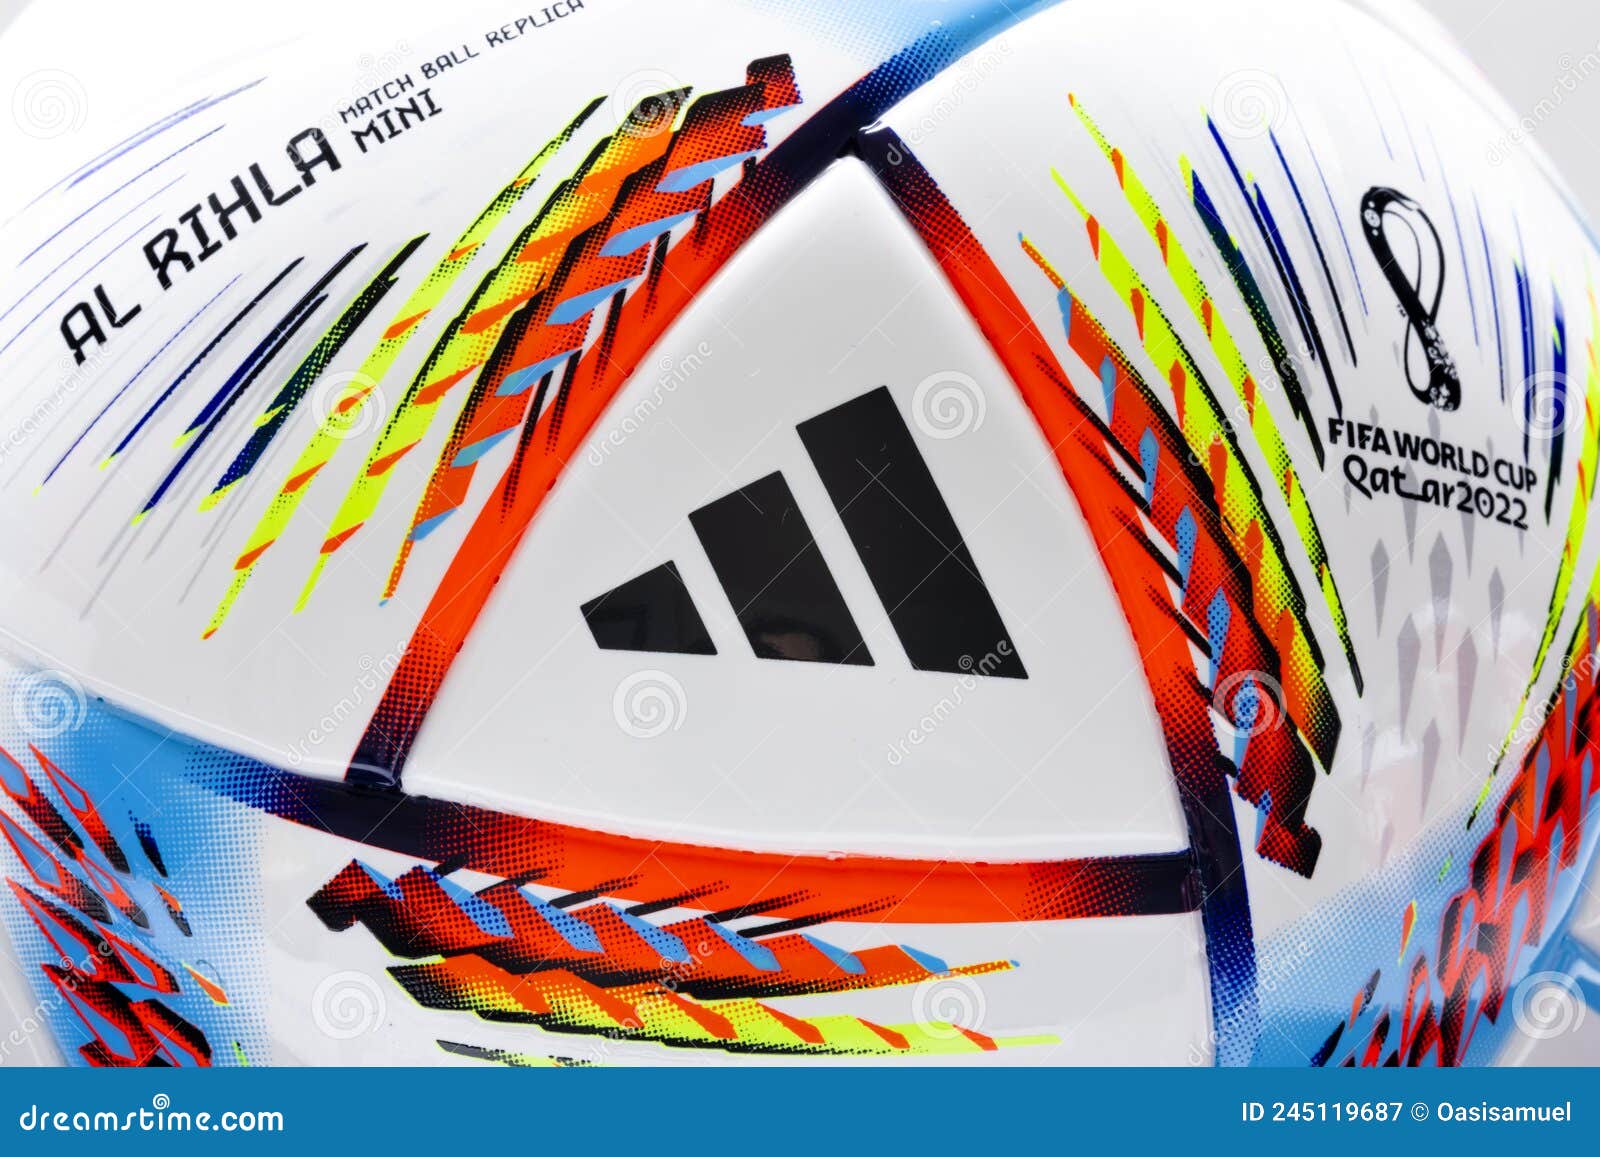 Al Rihla FIFA World Cup Qatar 2022 ball unveiled by adidas